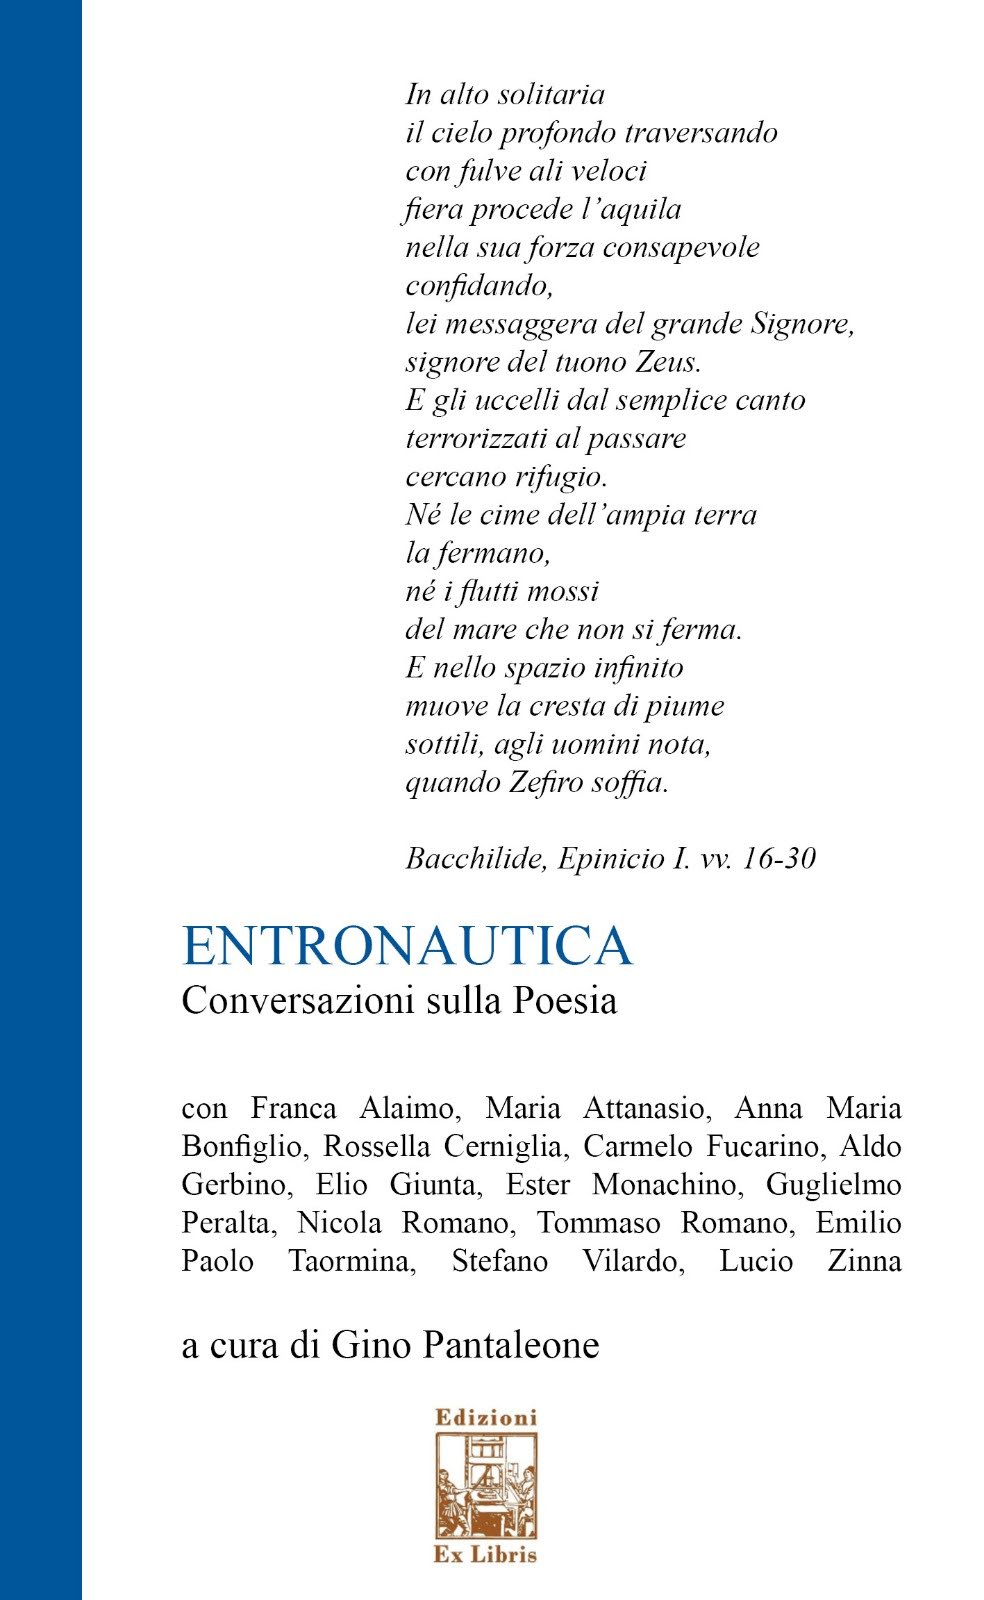 "ENTRONAUTICA" - Conversazioni sulla Poesia (Ex LIbris edizioni), a cura di Gino Pantaleone